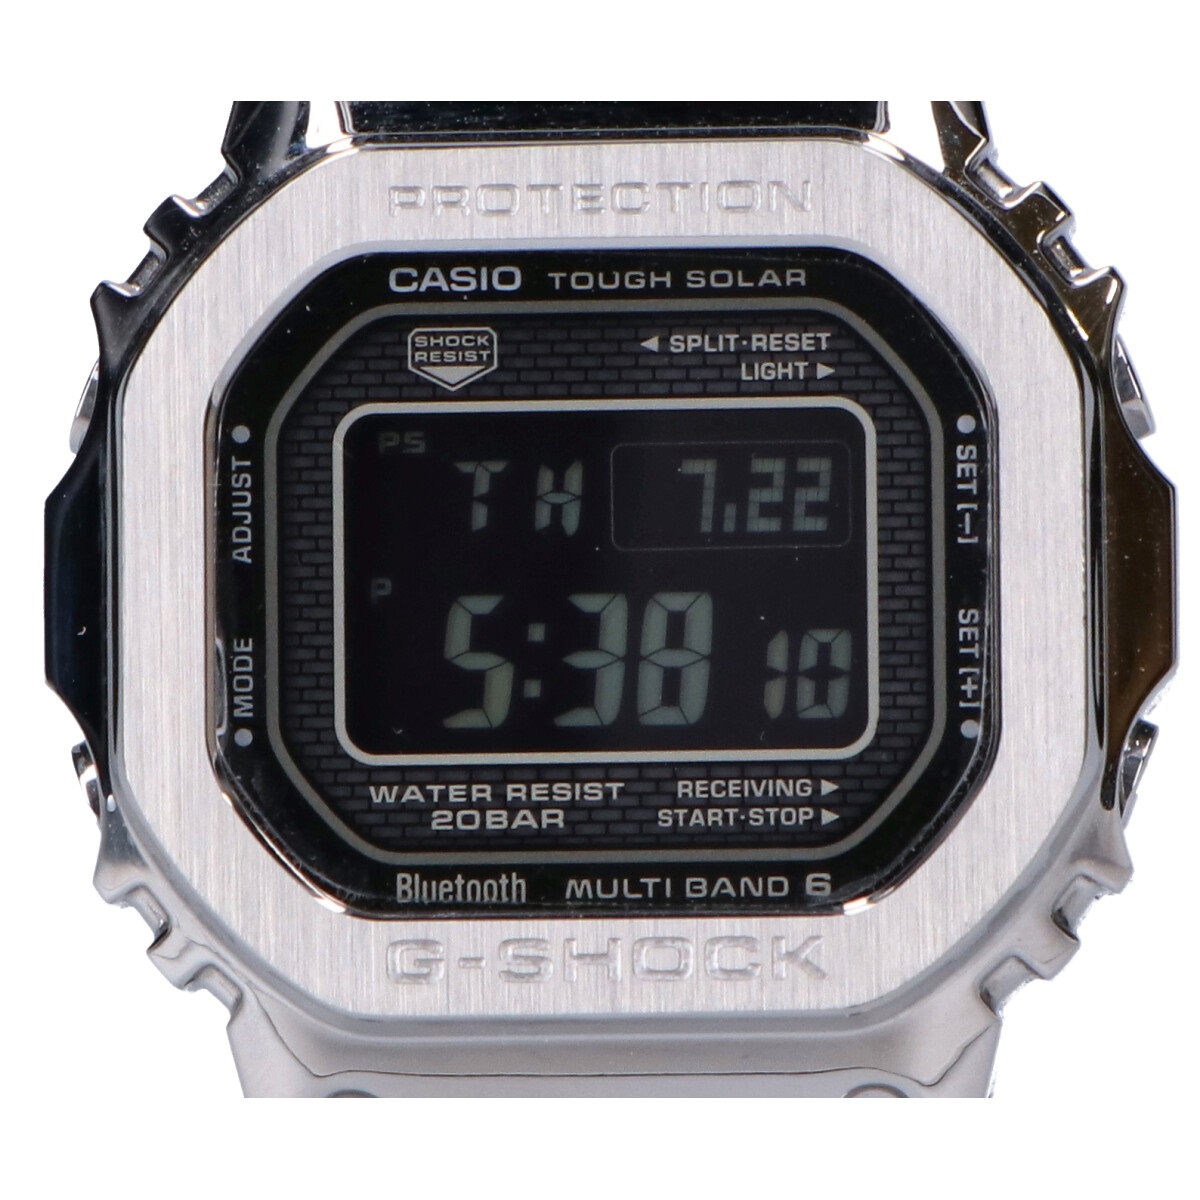 ジーショックのGMW-B5000-1JF フルメタル ラバーベルト Bluetooth タフソーラー電波 腕時計の買取実績です。